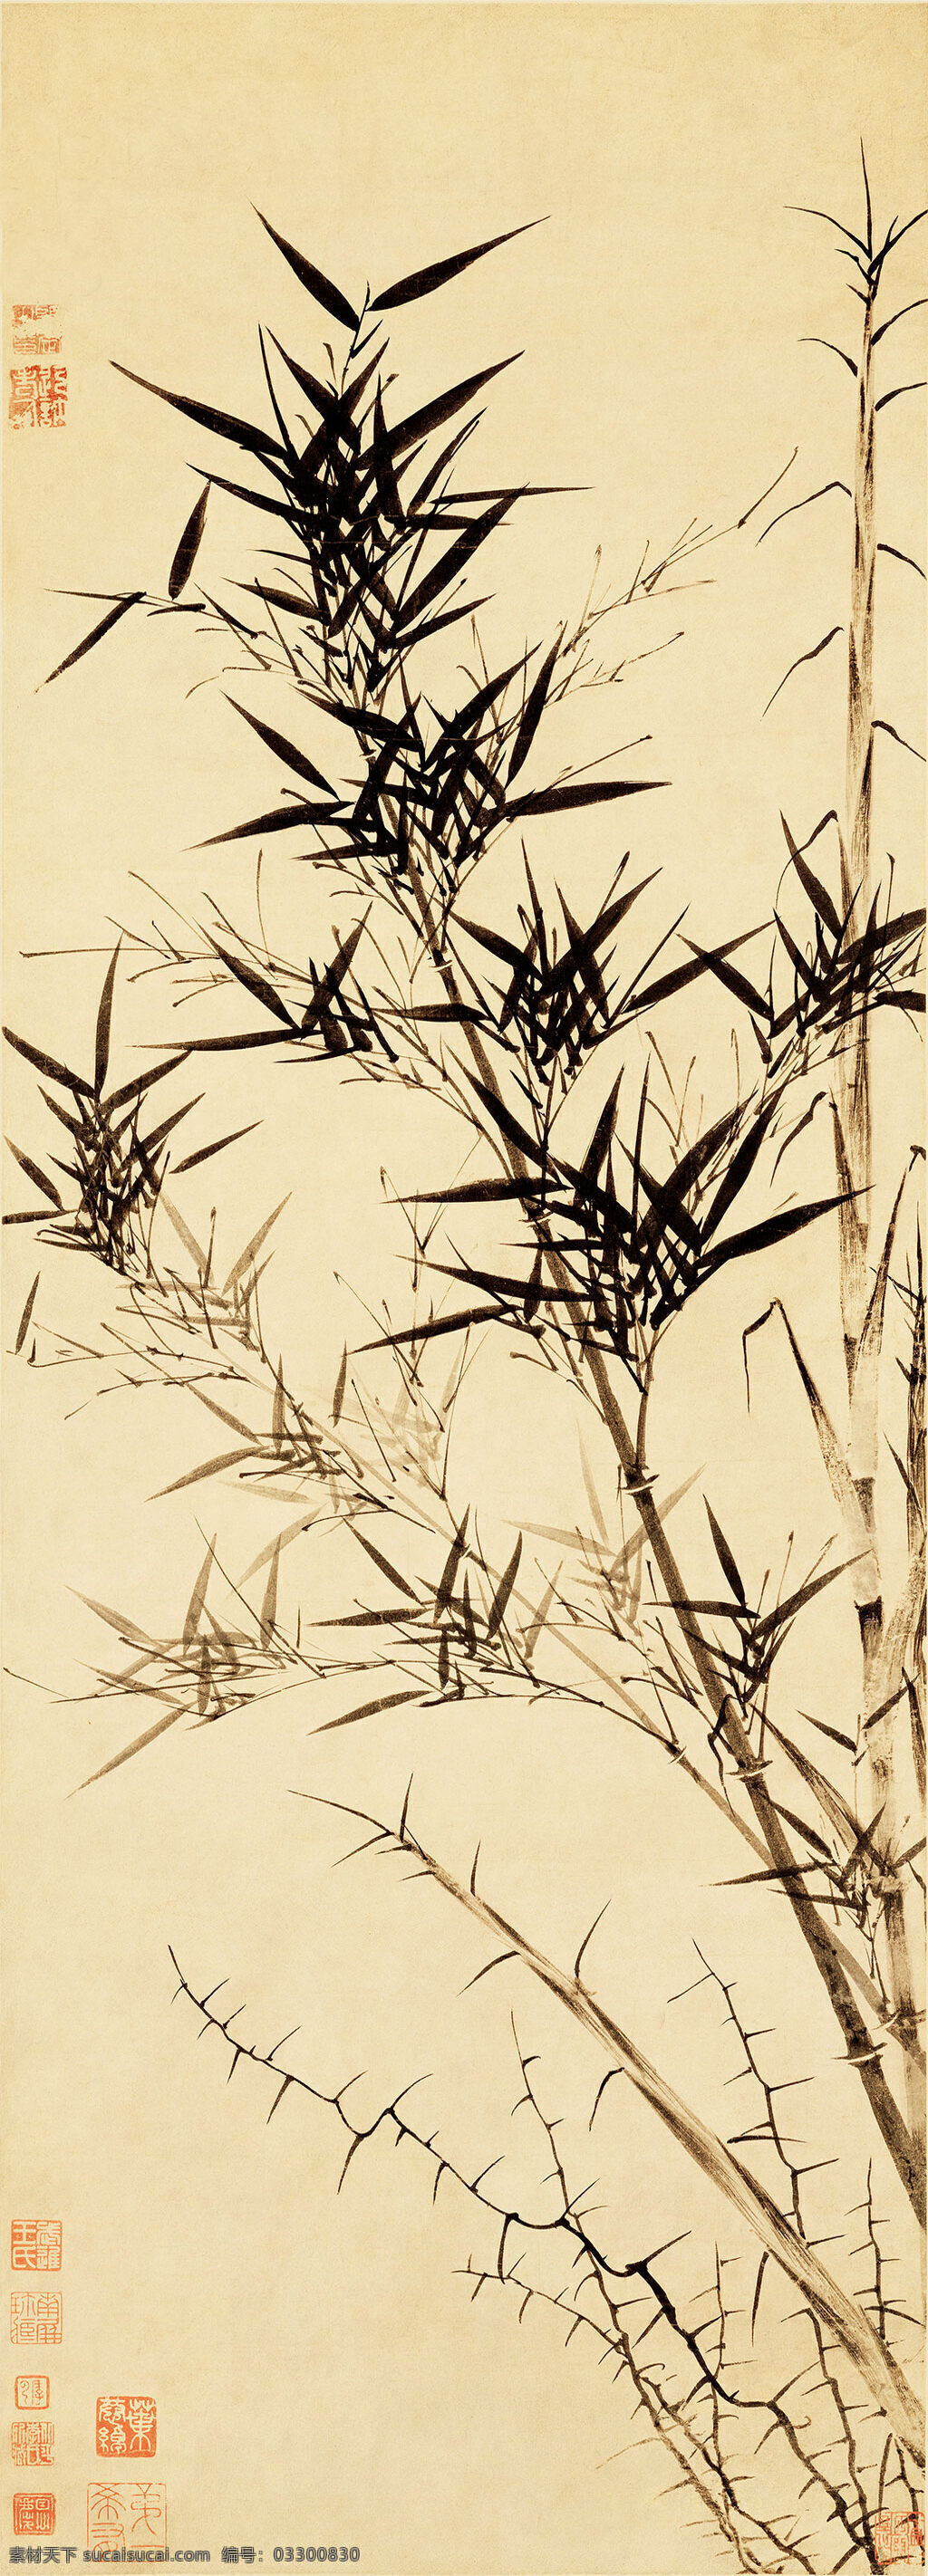 中式 水墨 国画 新竹 图 装饰画 竹 背景墙 仿古